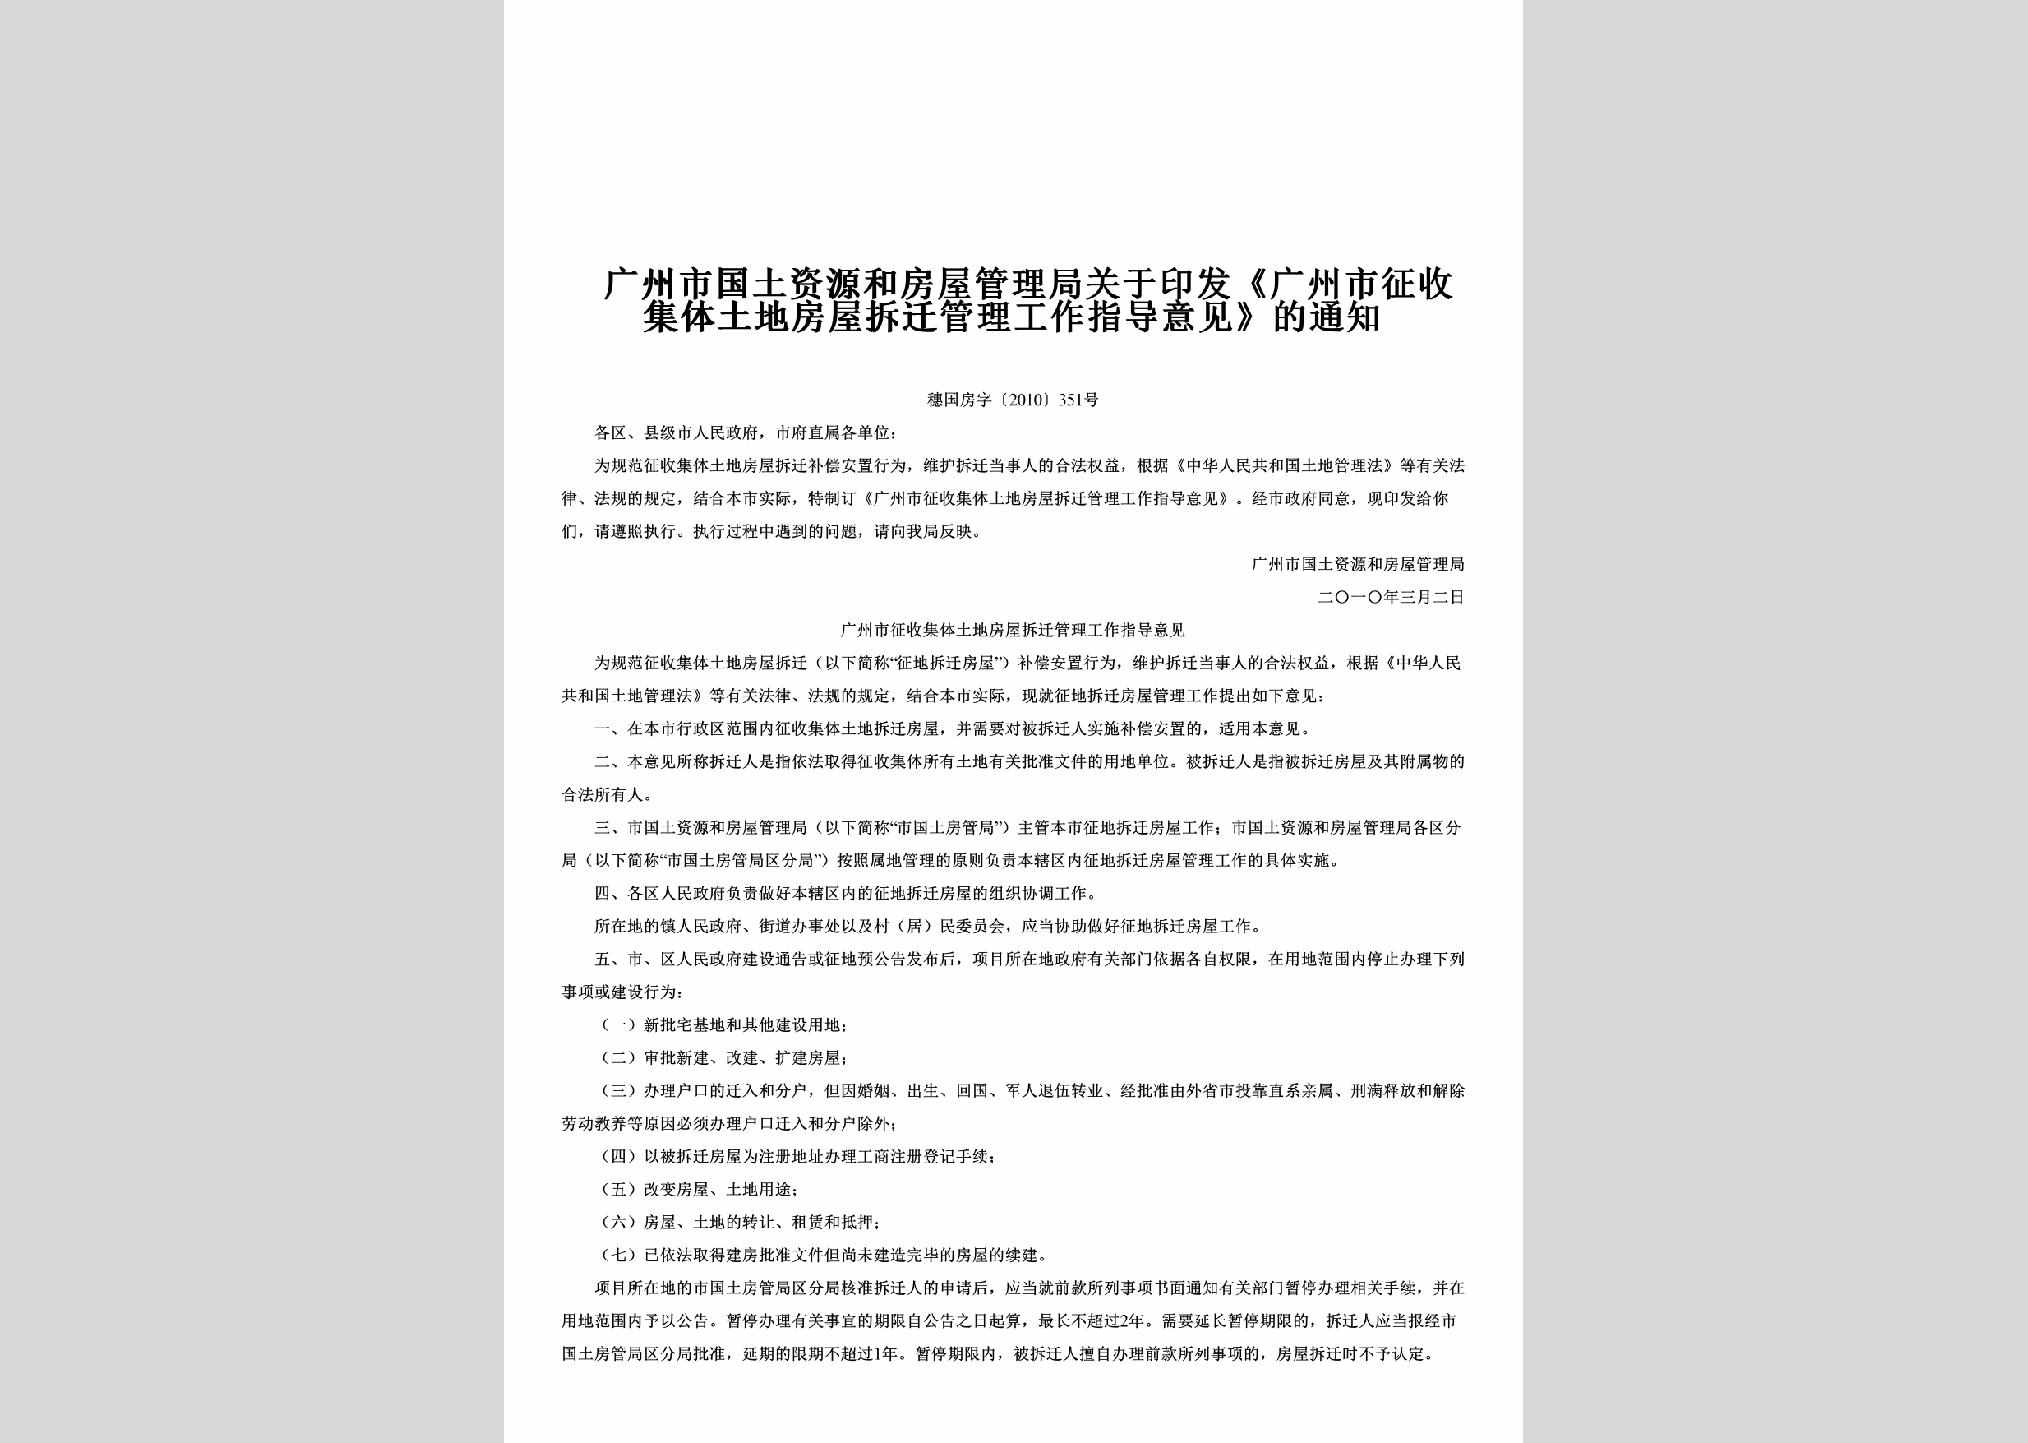 穗国房字[2010]351号：关于印发《广州市征收集体土地房屋拆迁管理工作指导意见》的通知